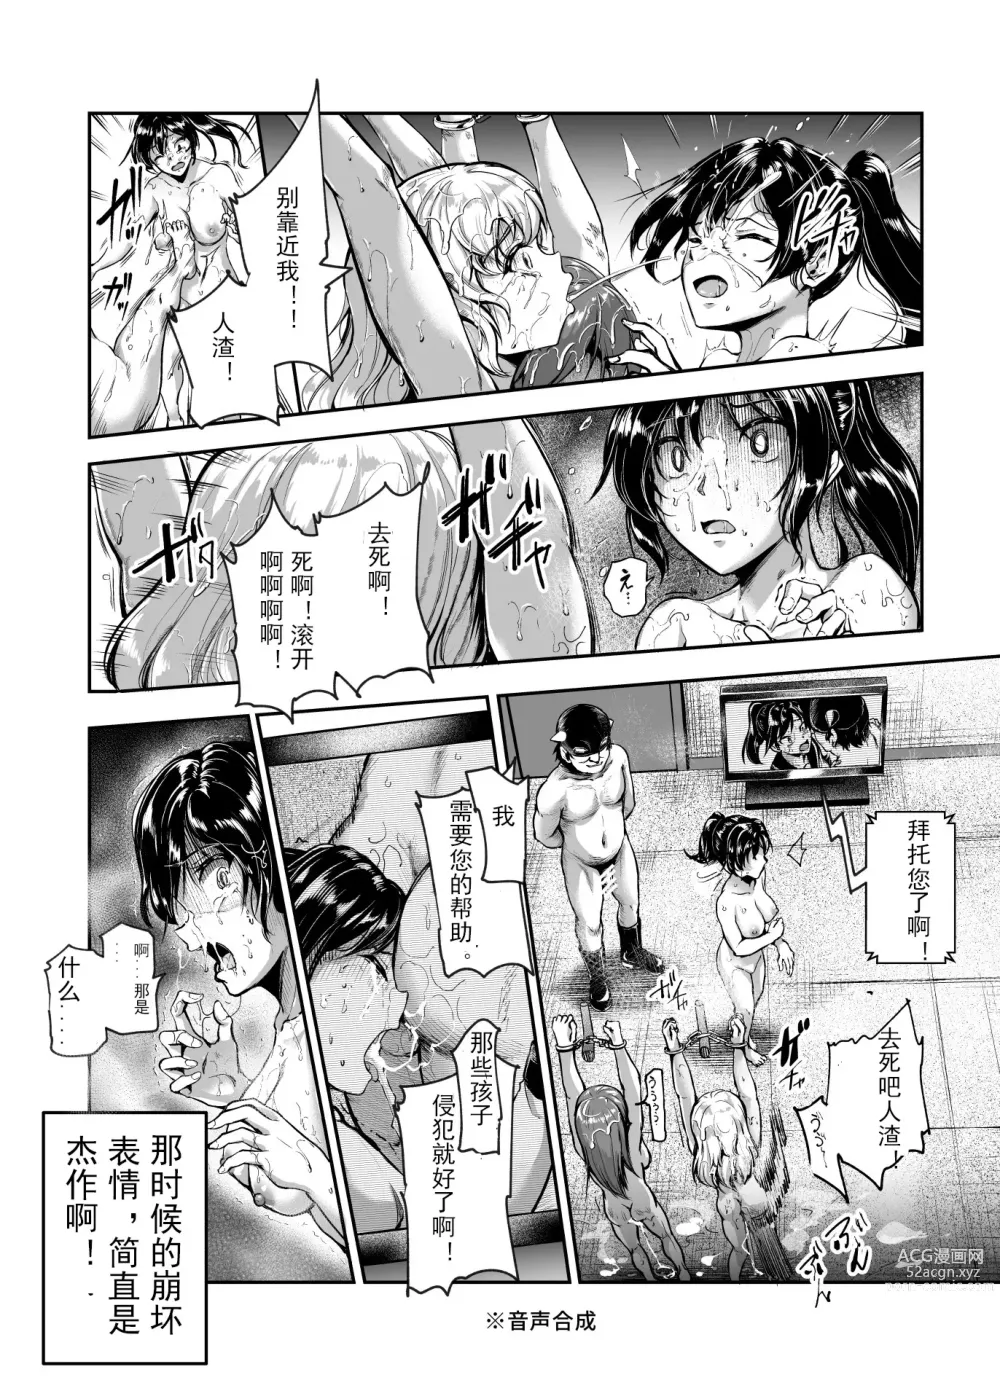 Page 26 of doujinshi 进入邪恶组织工作的话，就可以放肆享受女人性爱自助了吗?EX